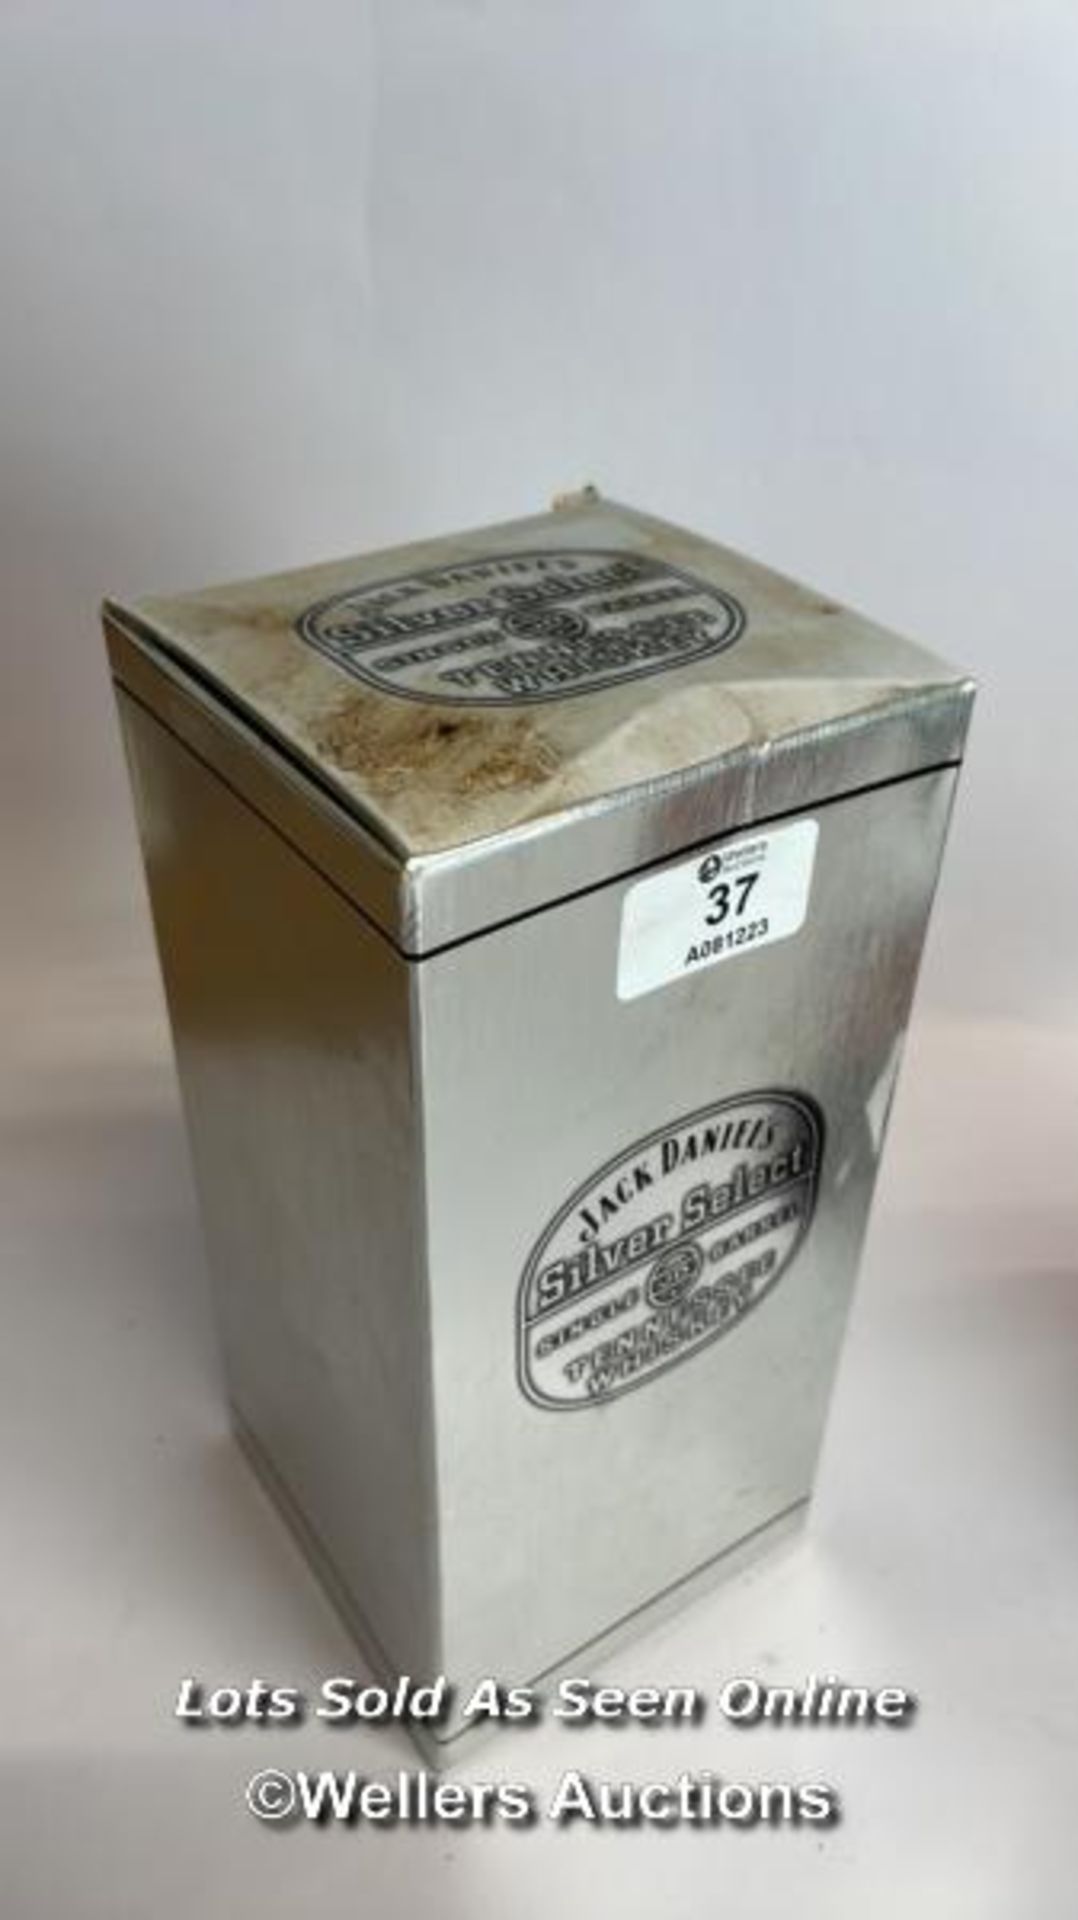 Jack Daniels Silver Select Single Barrel Tennessee Whiskey, Release date: 11-03-99, Barrek no: 9- - Bild 8 aus 8